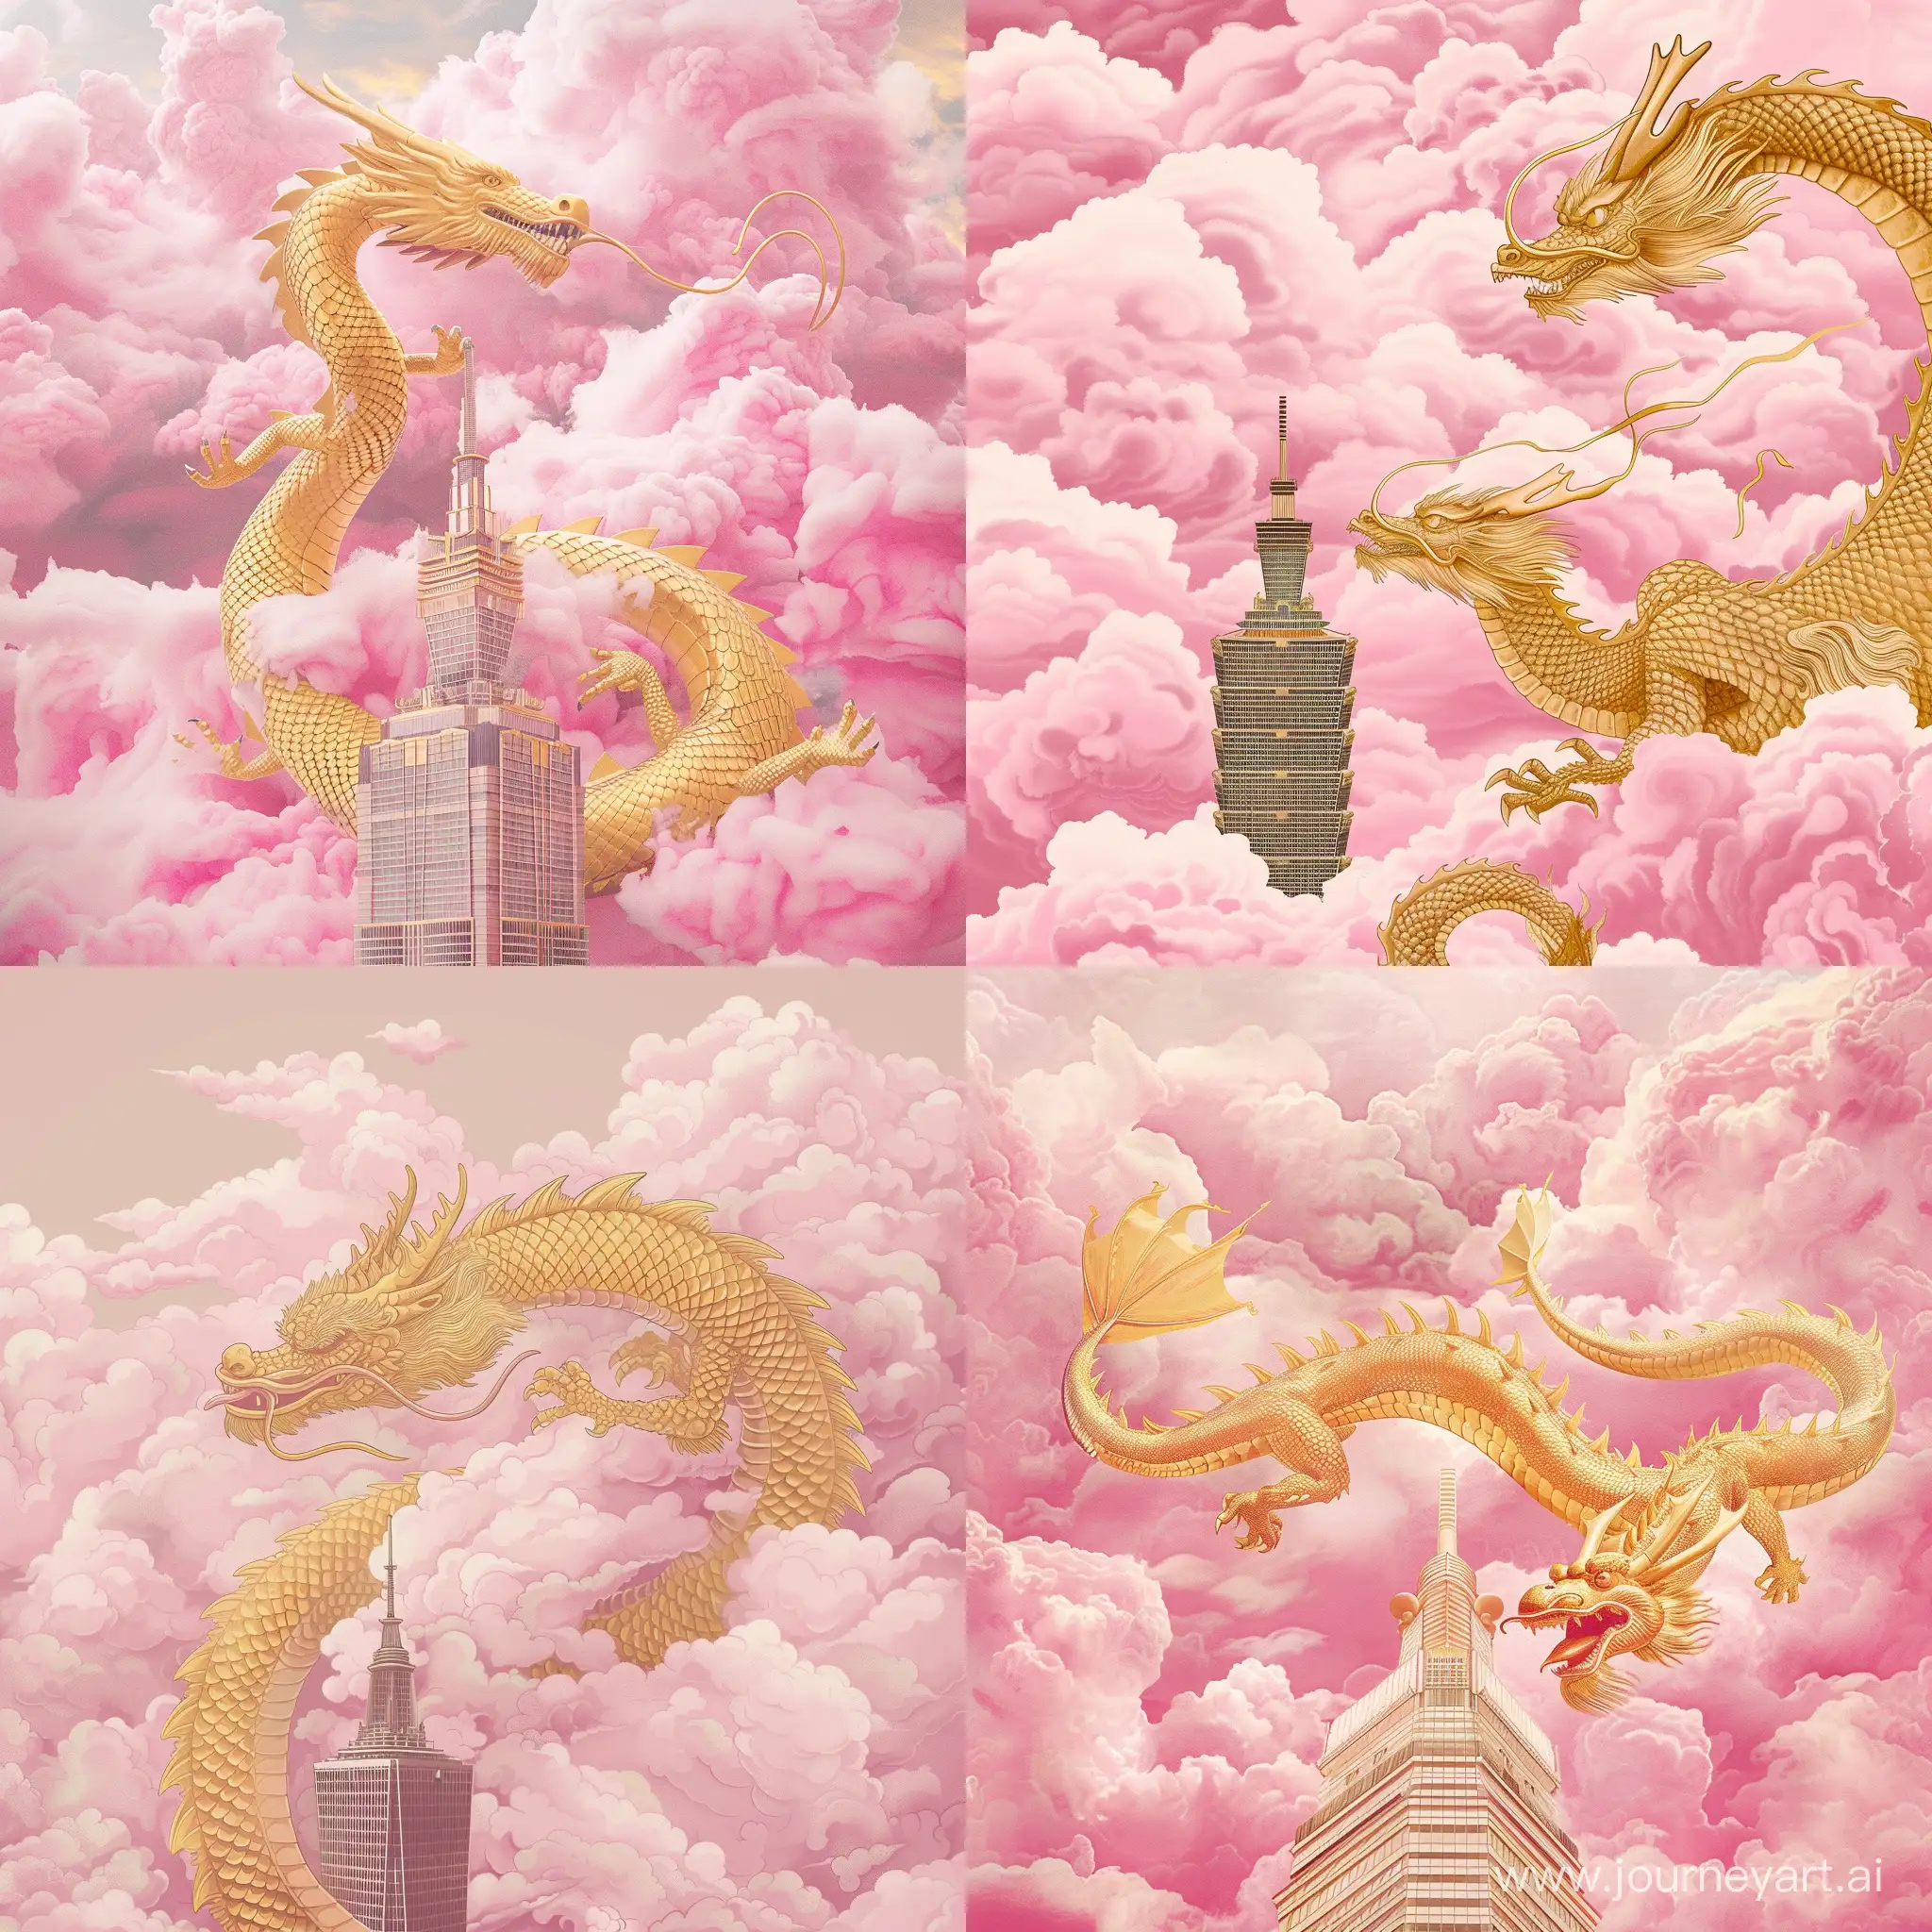 Majestic-Golden-Dragon-Soaring-Over-City-Skyscraper